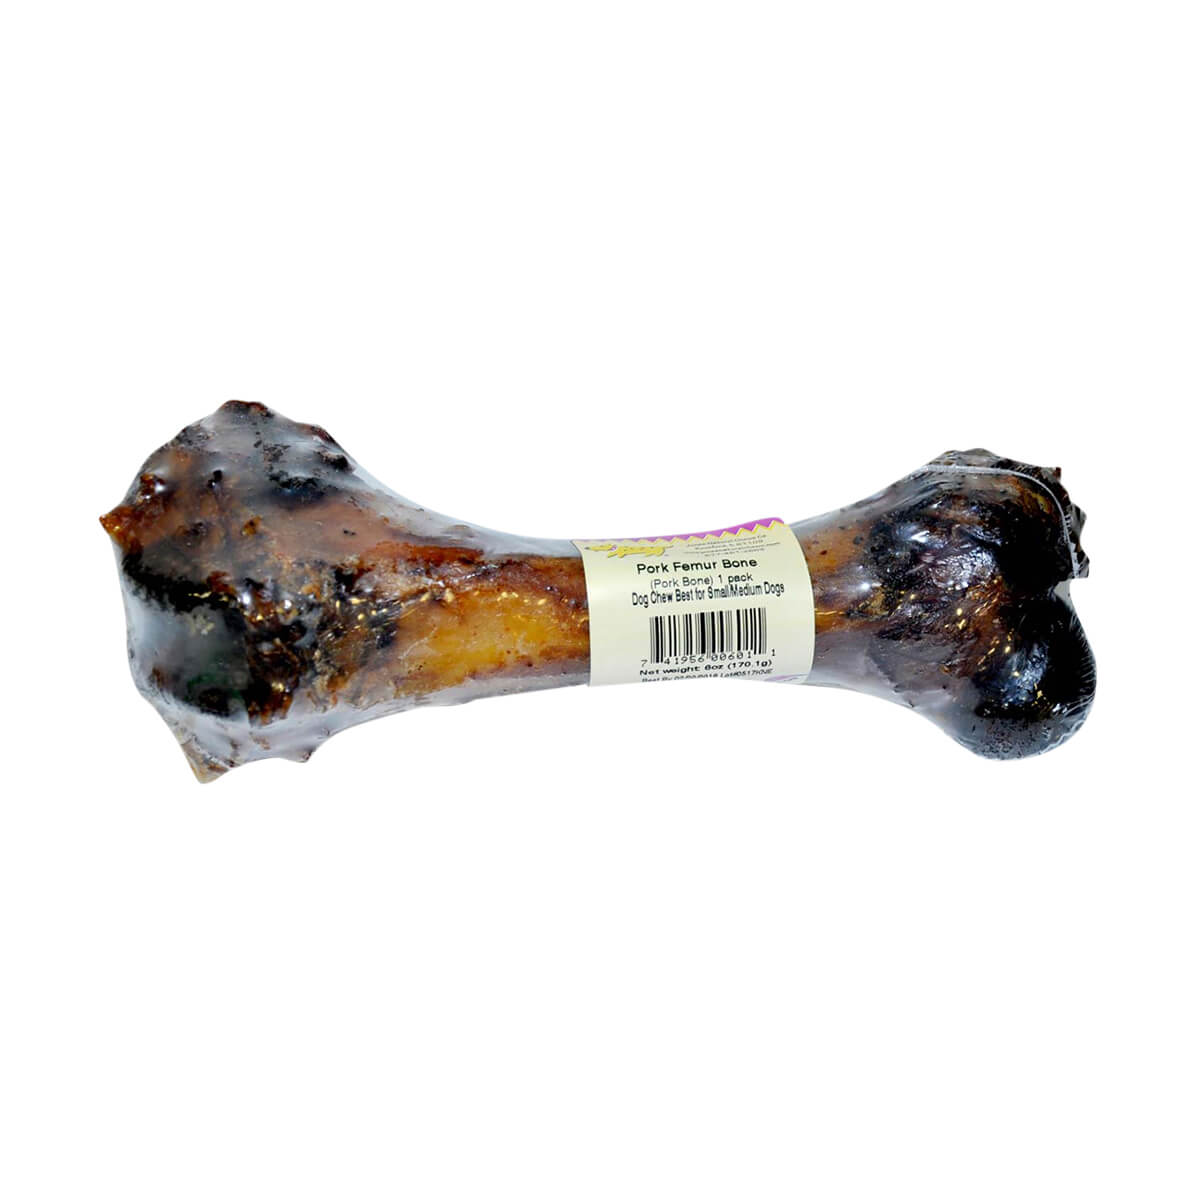 Dog Bones & Treats - Pork Femur